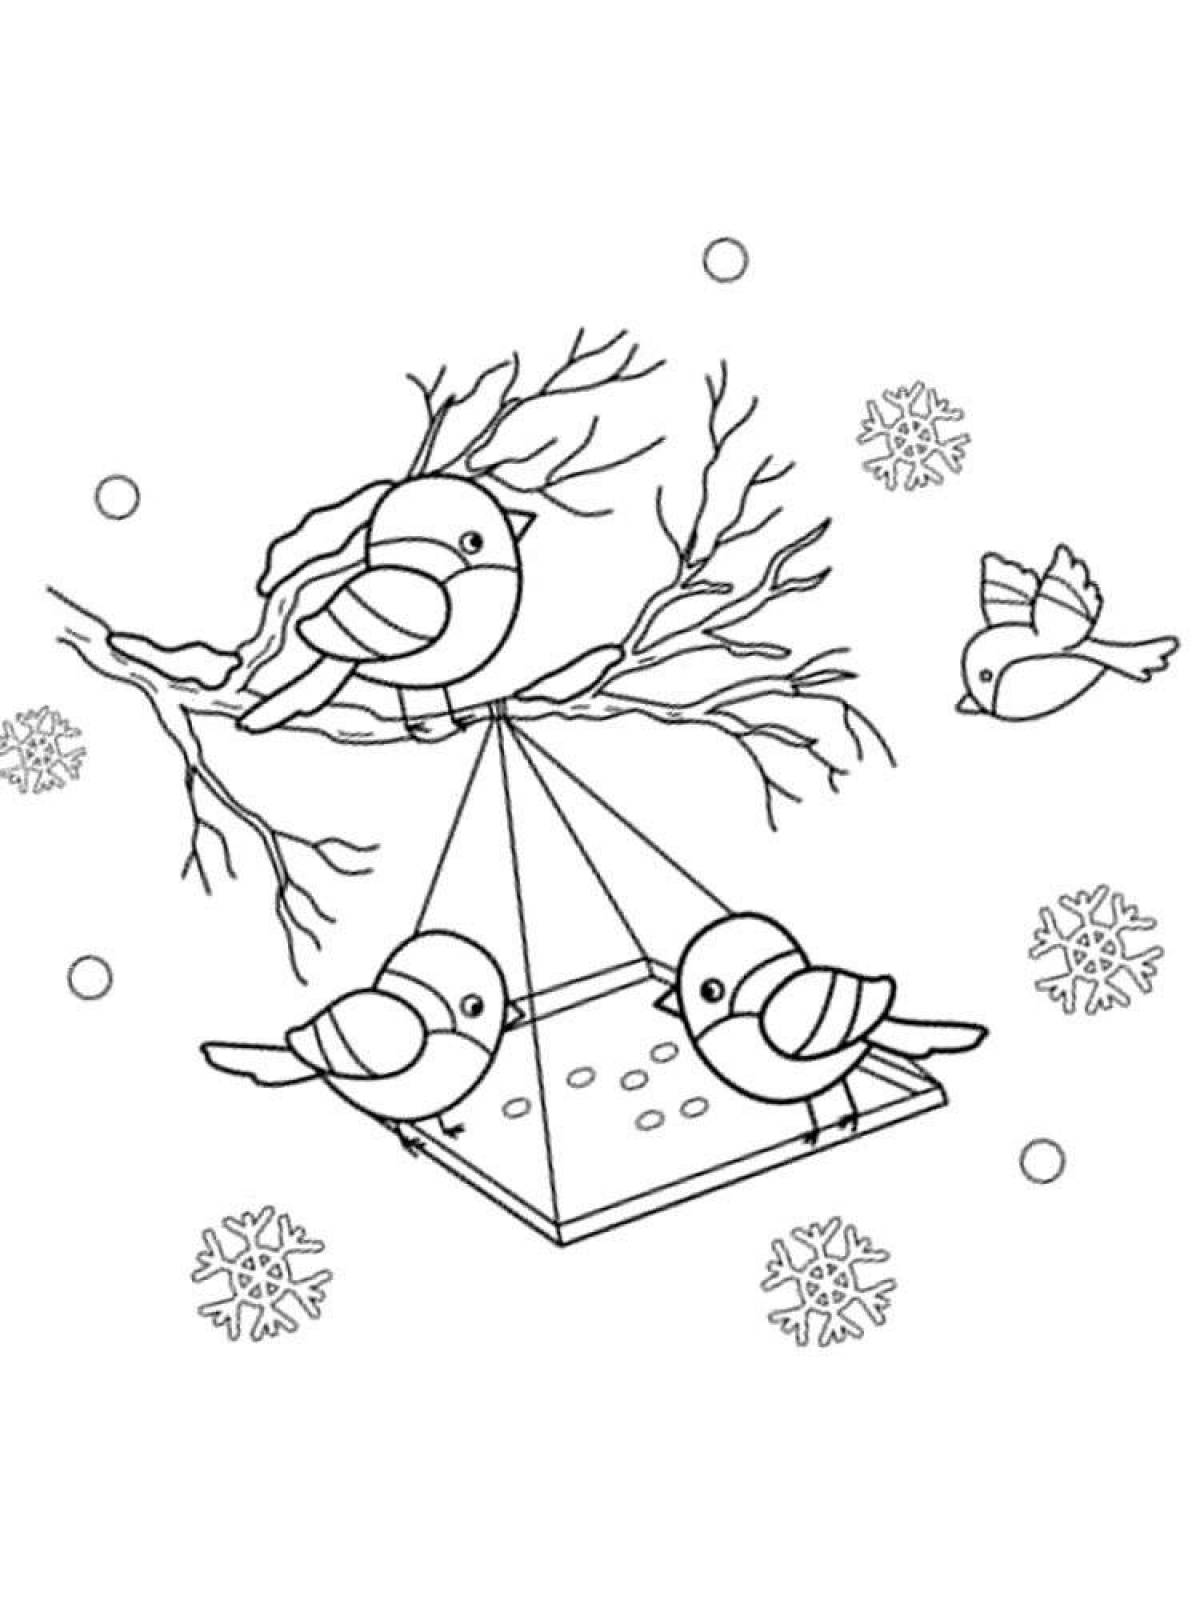 Calming bird feeding in winter coloring book